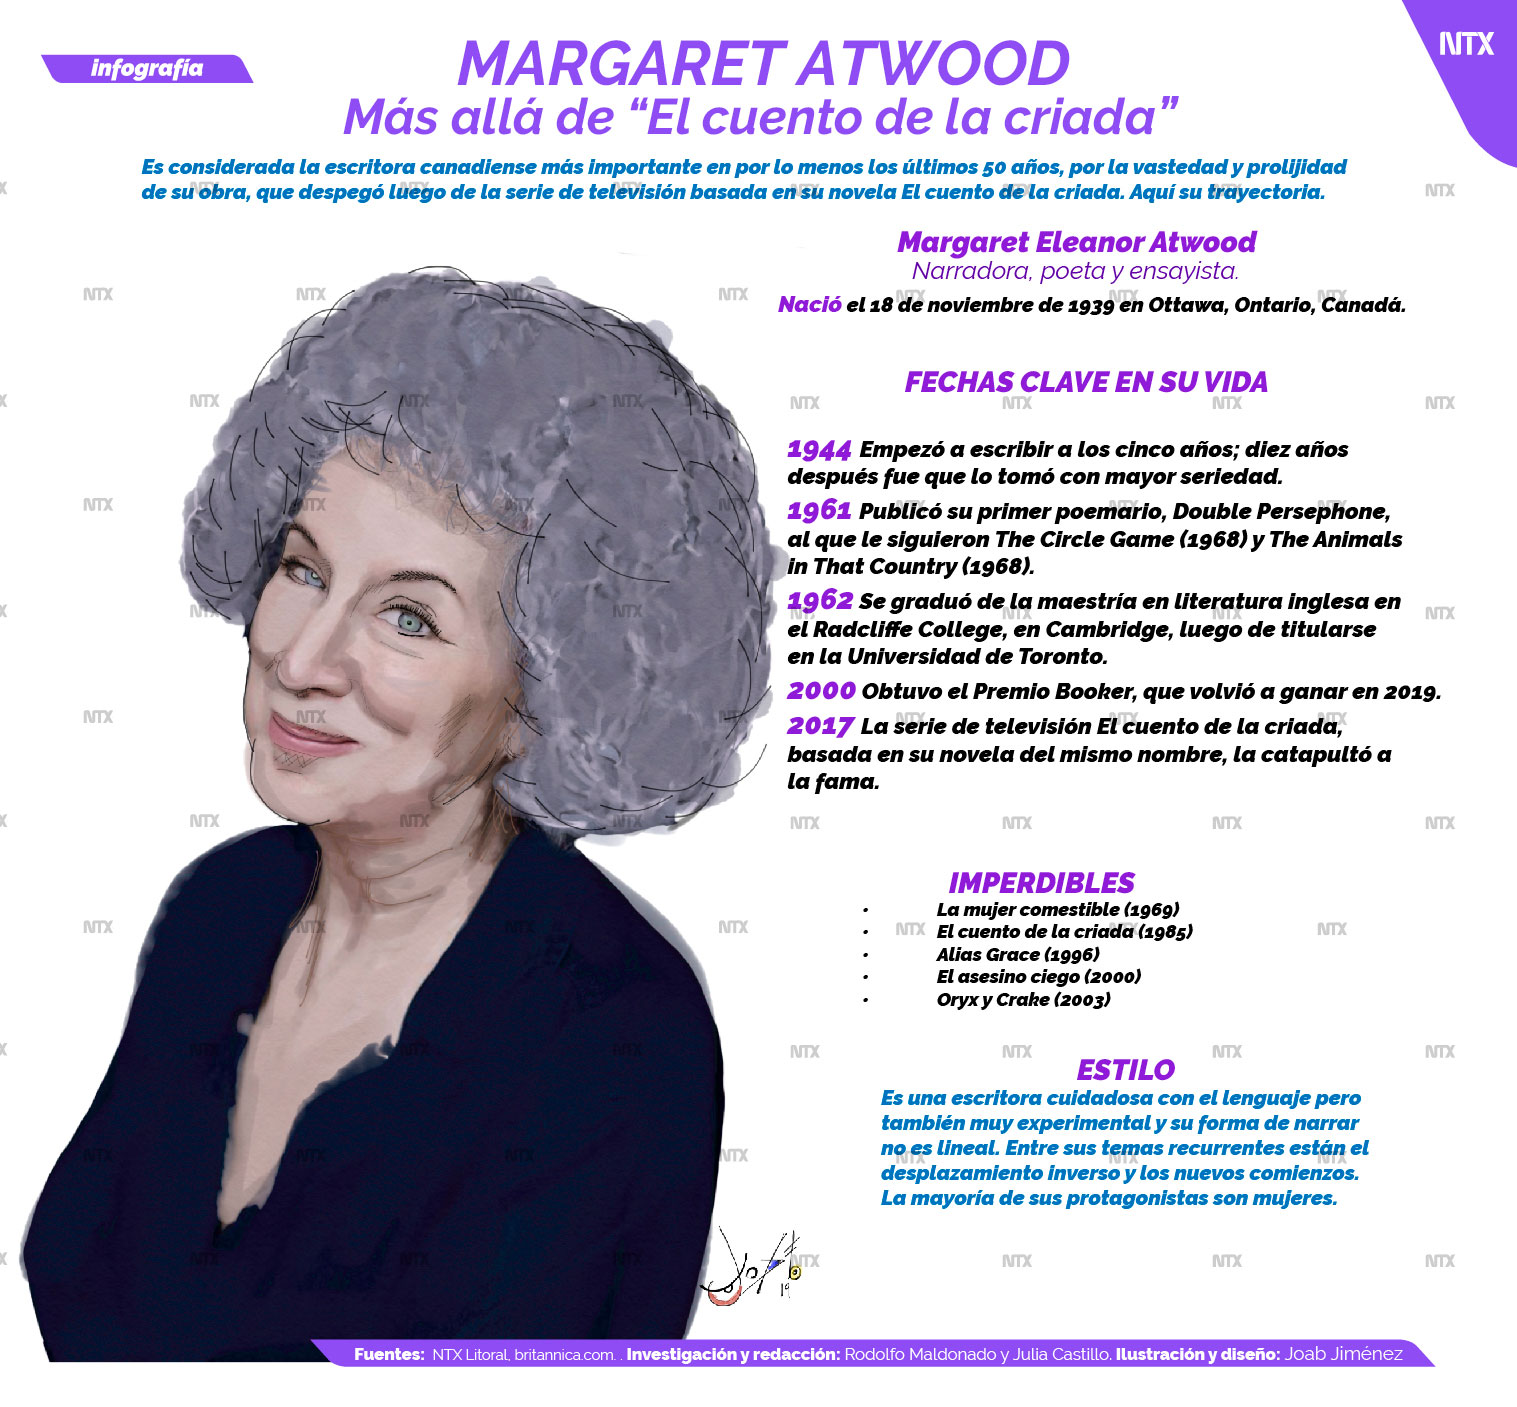 Margaret Atwood más allá de "El cuento de la criada"